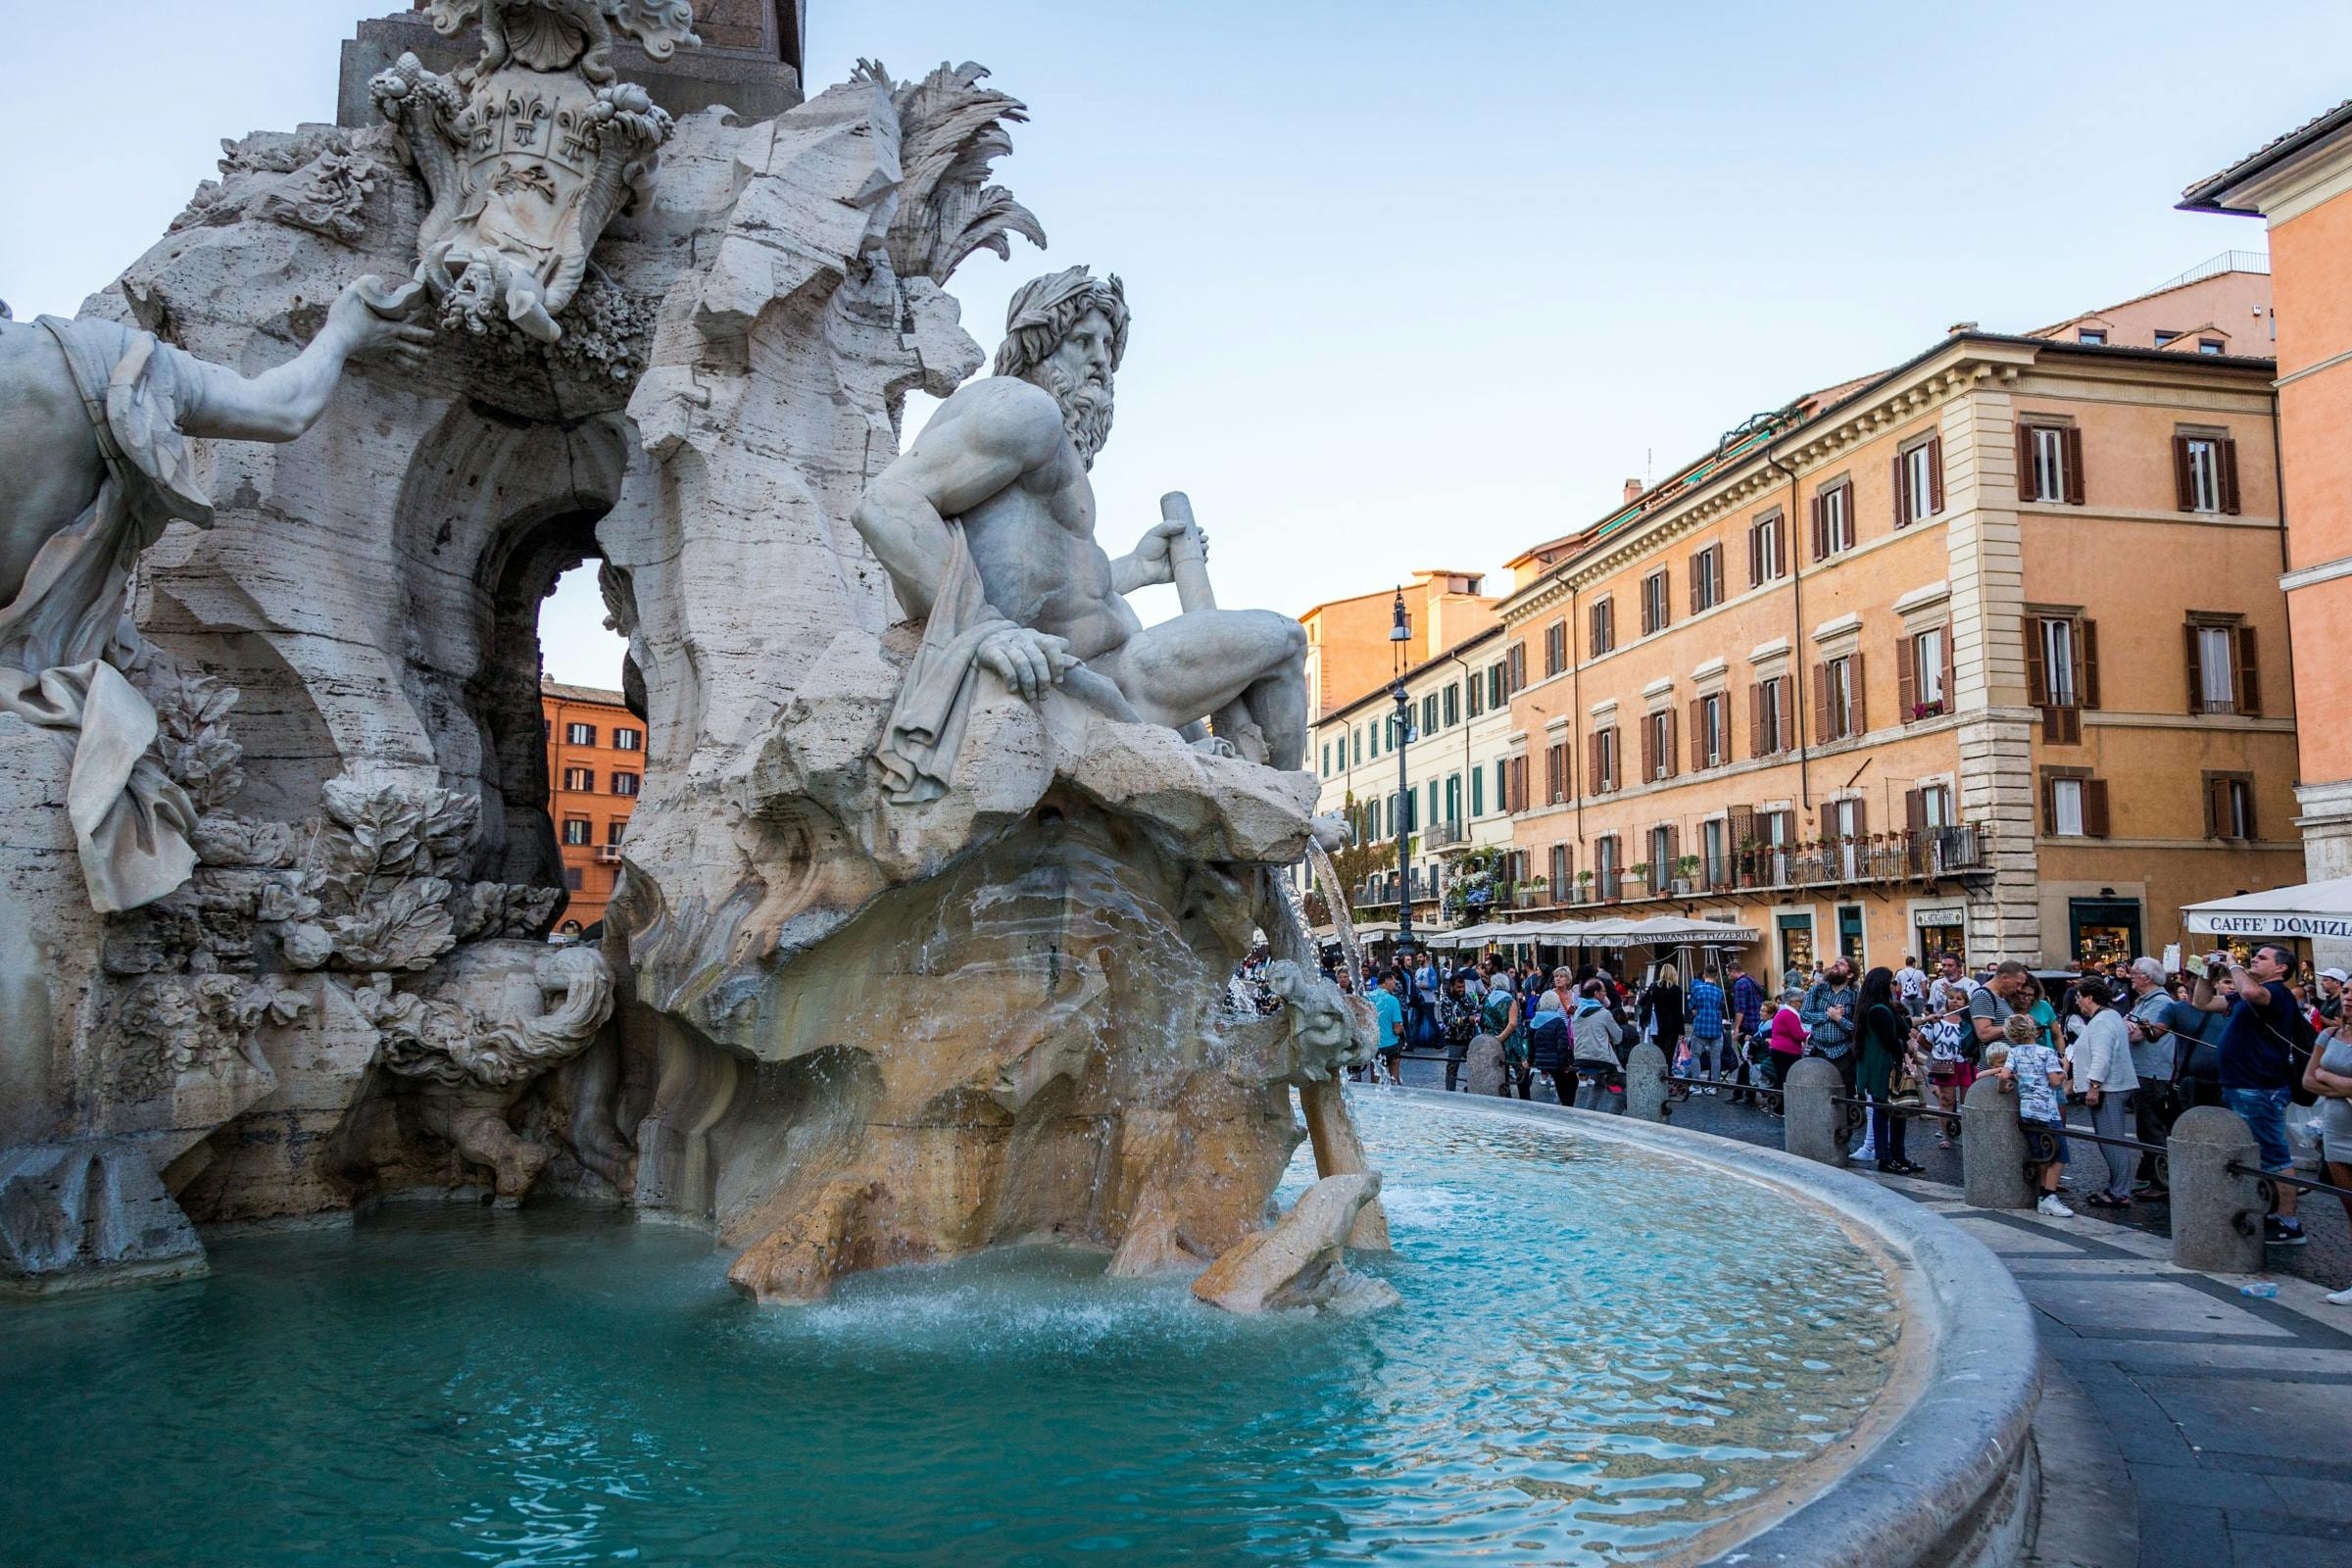 Visite à pied du meilleur de Rome avec la Piazza di Spagna, la fontaine de Trevi et le Panthéon